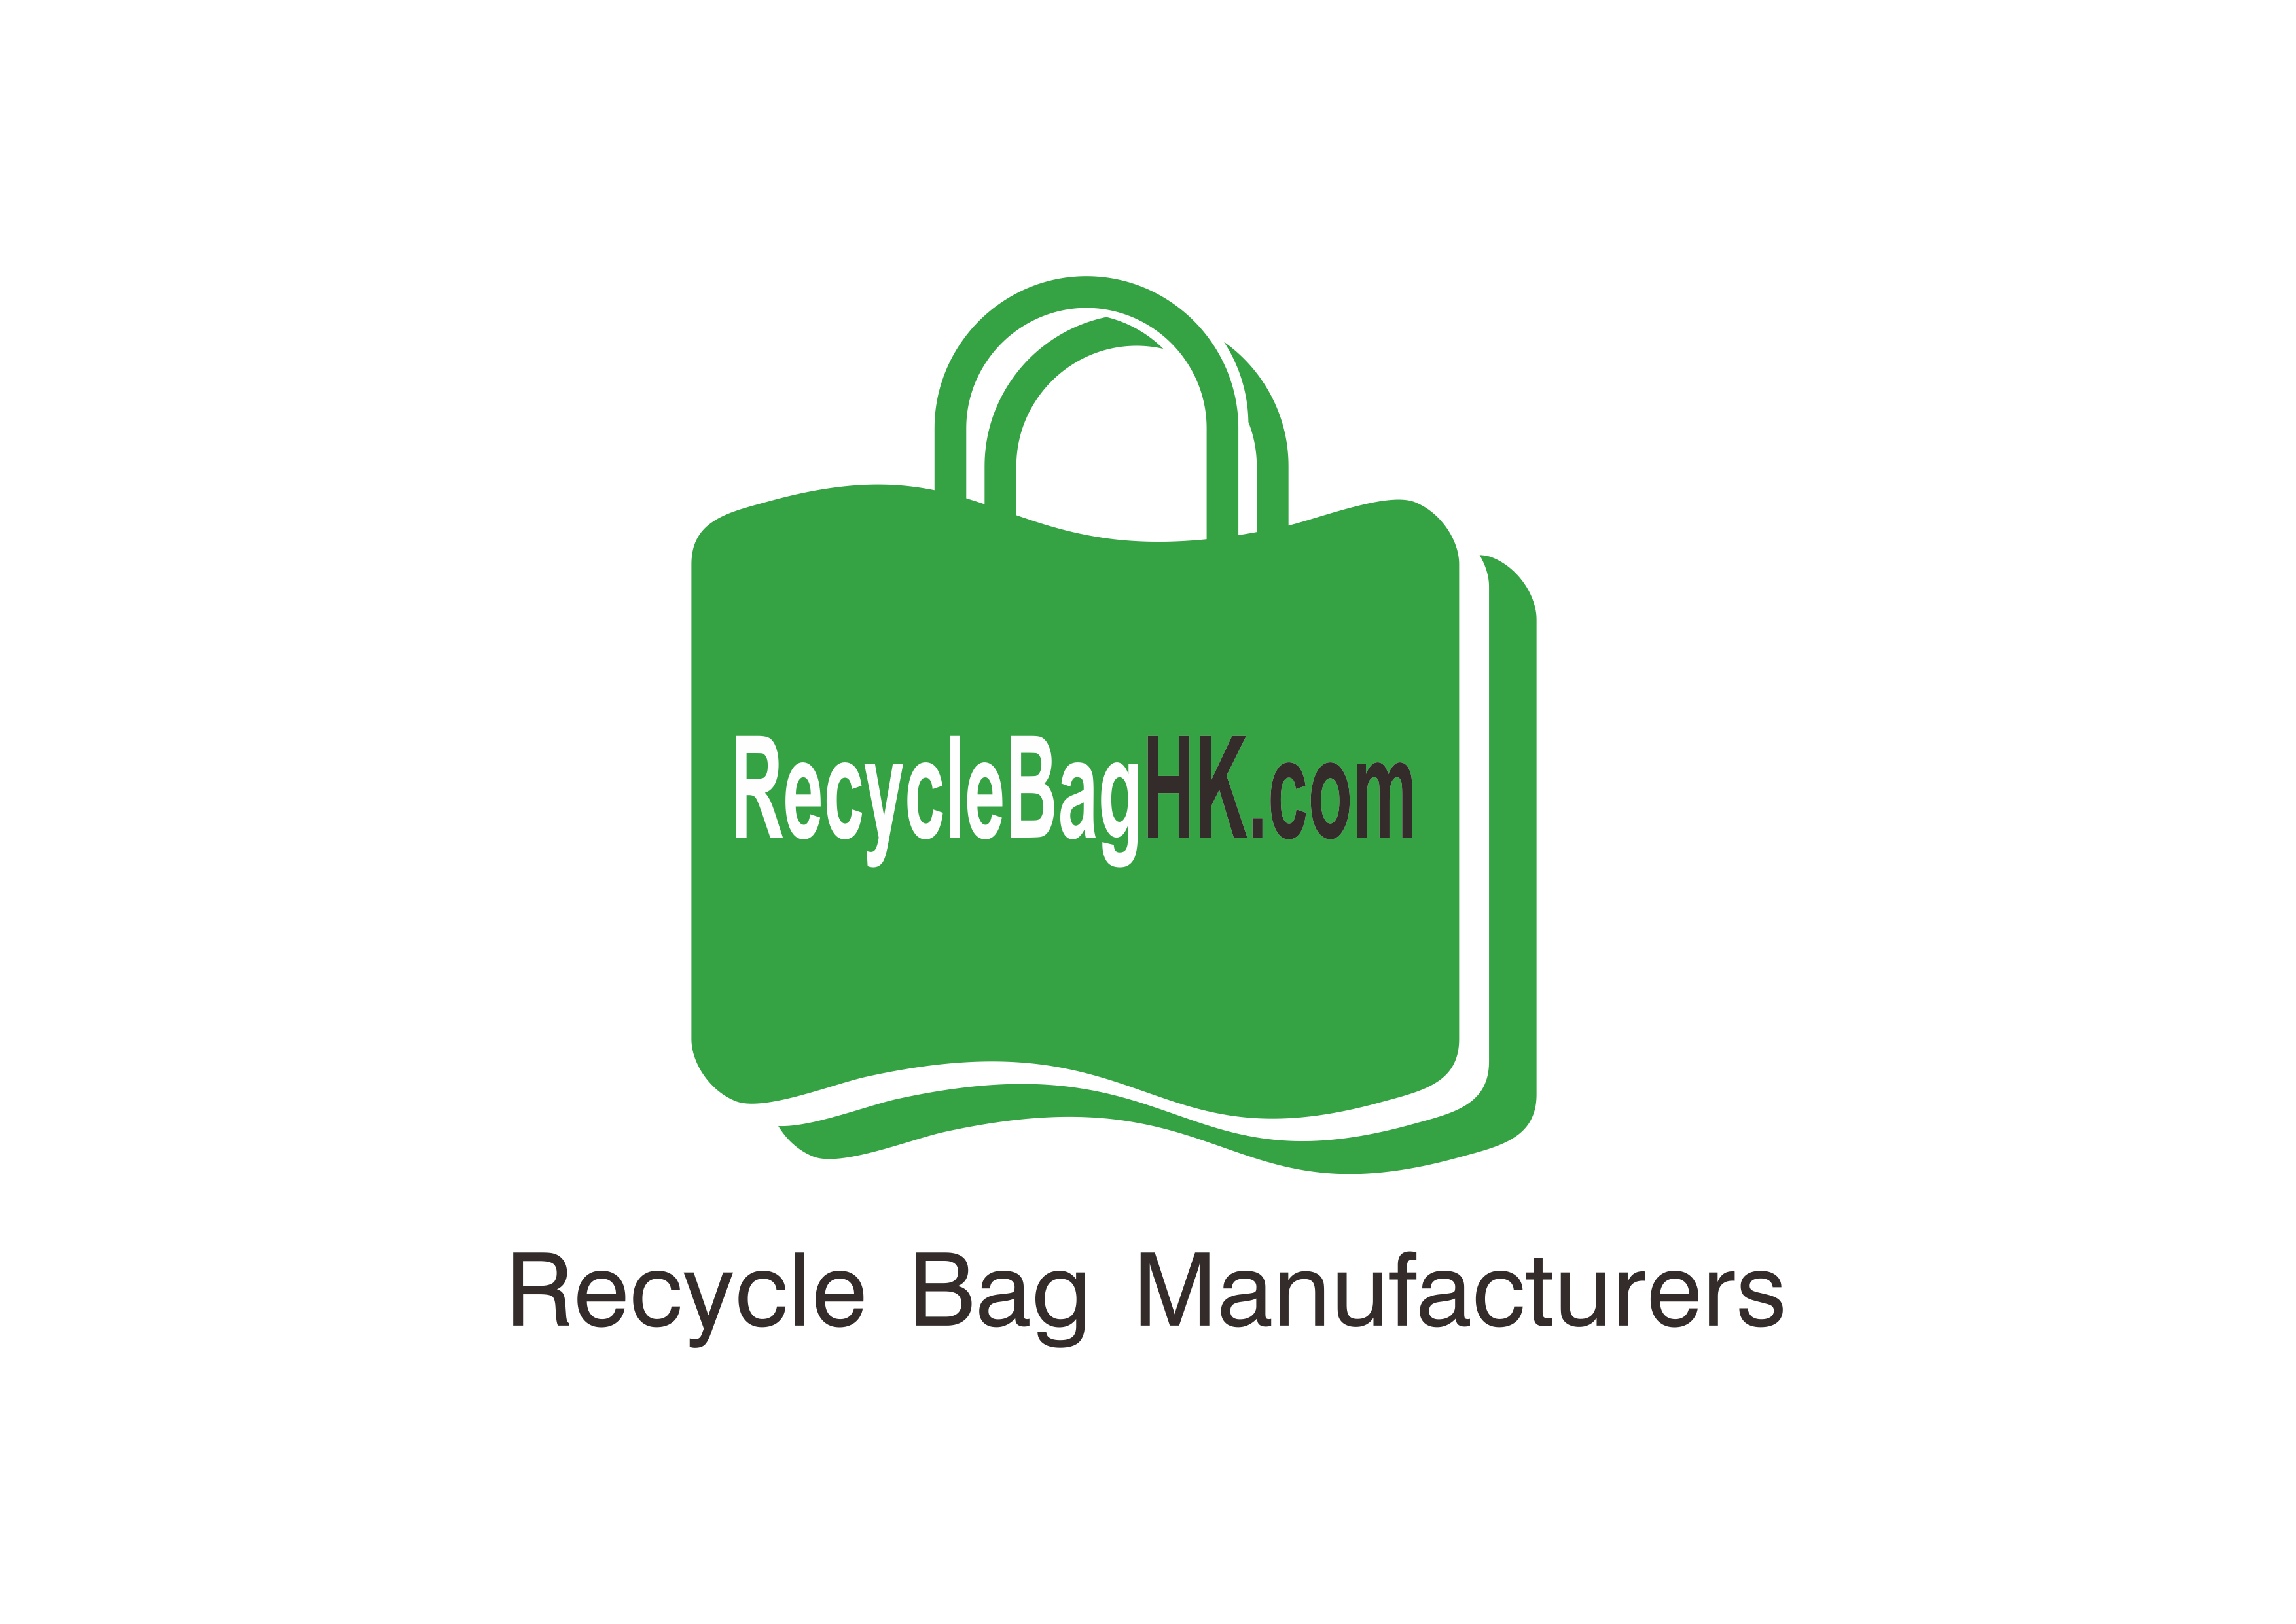 環保袋王RecycleBagHK.com - 環保袋訂製